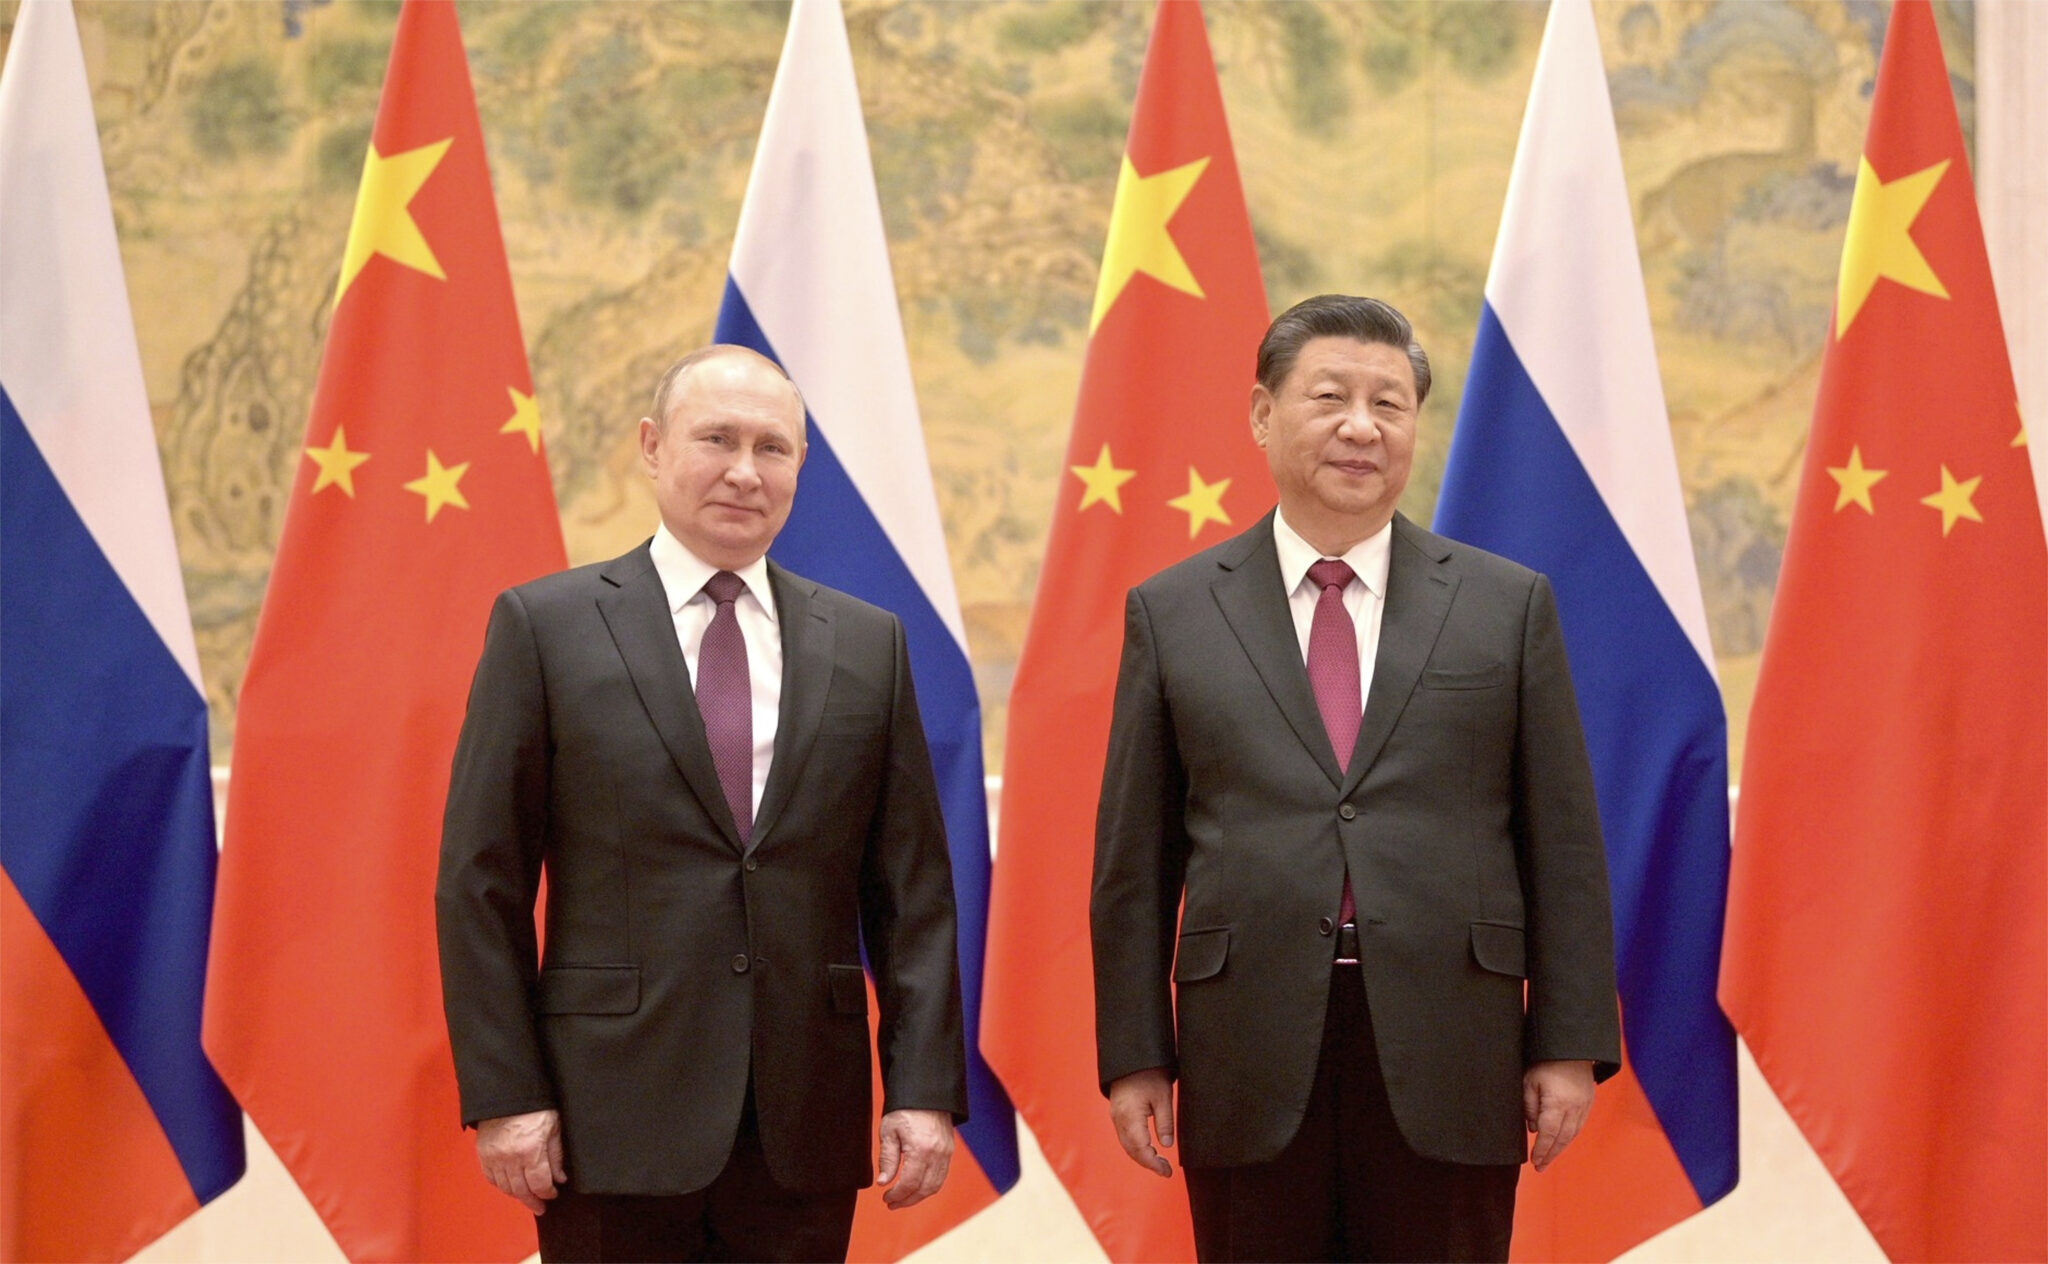 Владимир Путин и Си Цзиньпин во время встречи 4 февраля в Пекине. Фото пресс-службы Кремля